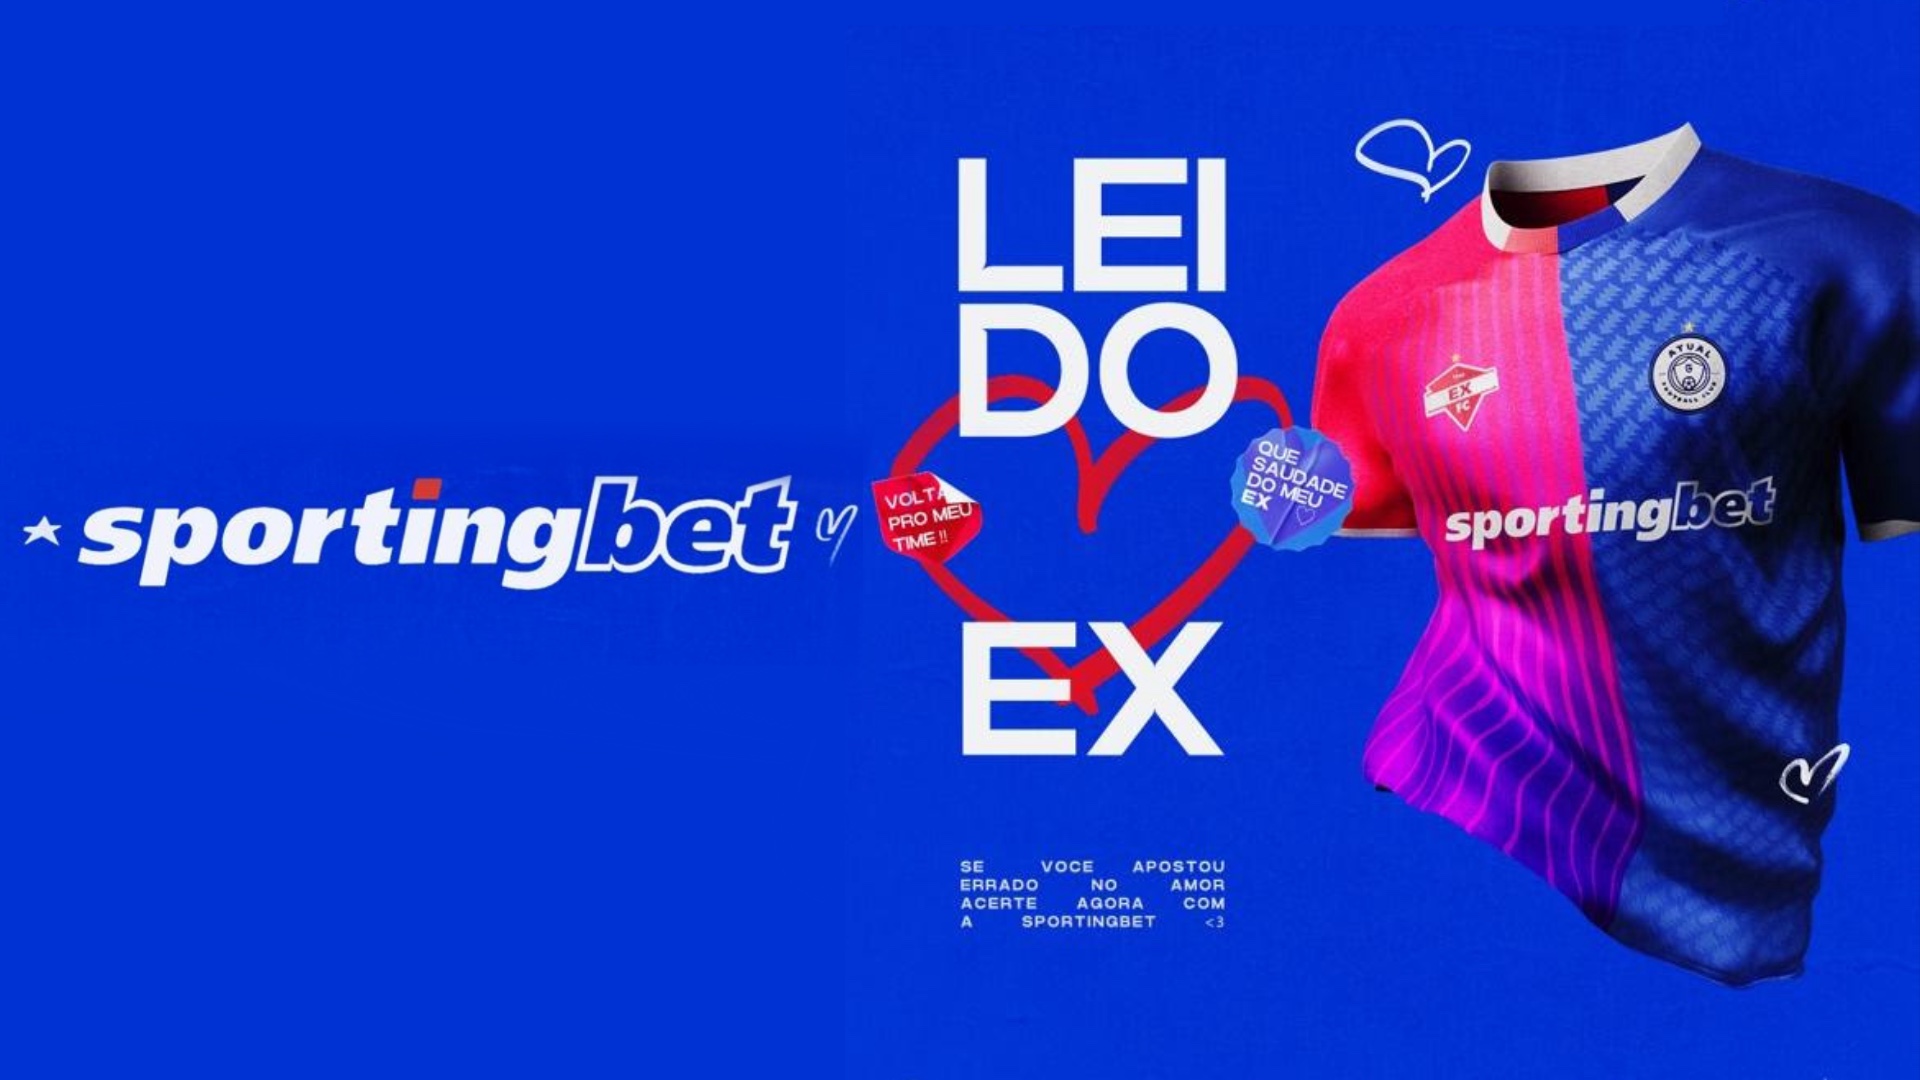 Sportingbet aposta na “Lei do Ex” para campanha de Dia dos Namorados